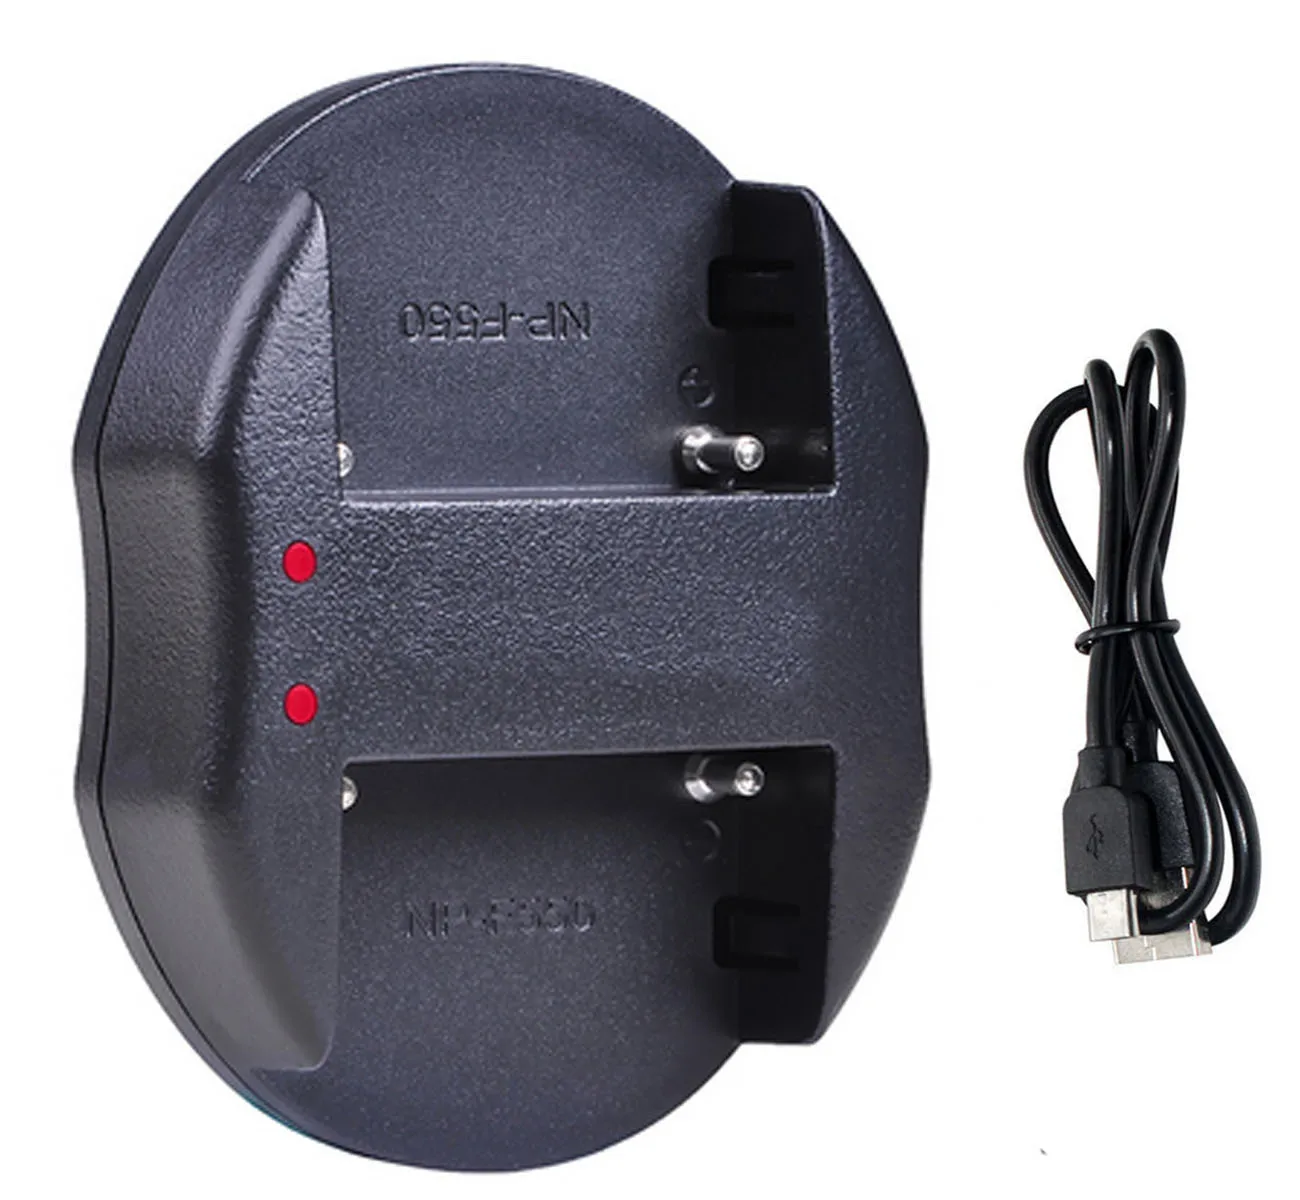 AC адаптер питания зарядное устройство для sony DCR-TRV310E, DCR-TRV410E, DCR-TRV420E, DCR-TRV430E, DCR-TRV460E, DCR-TRV480E, Handycam видеокамеры